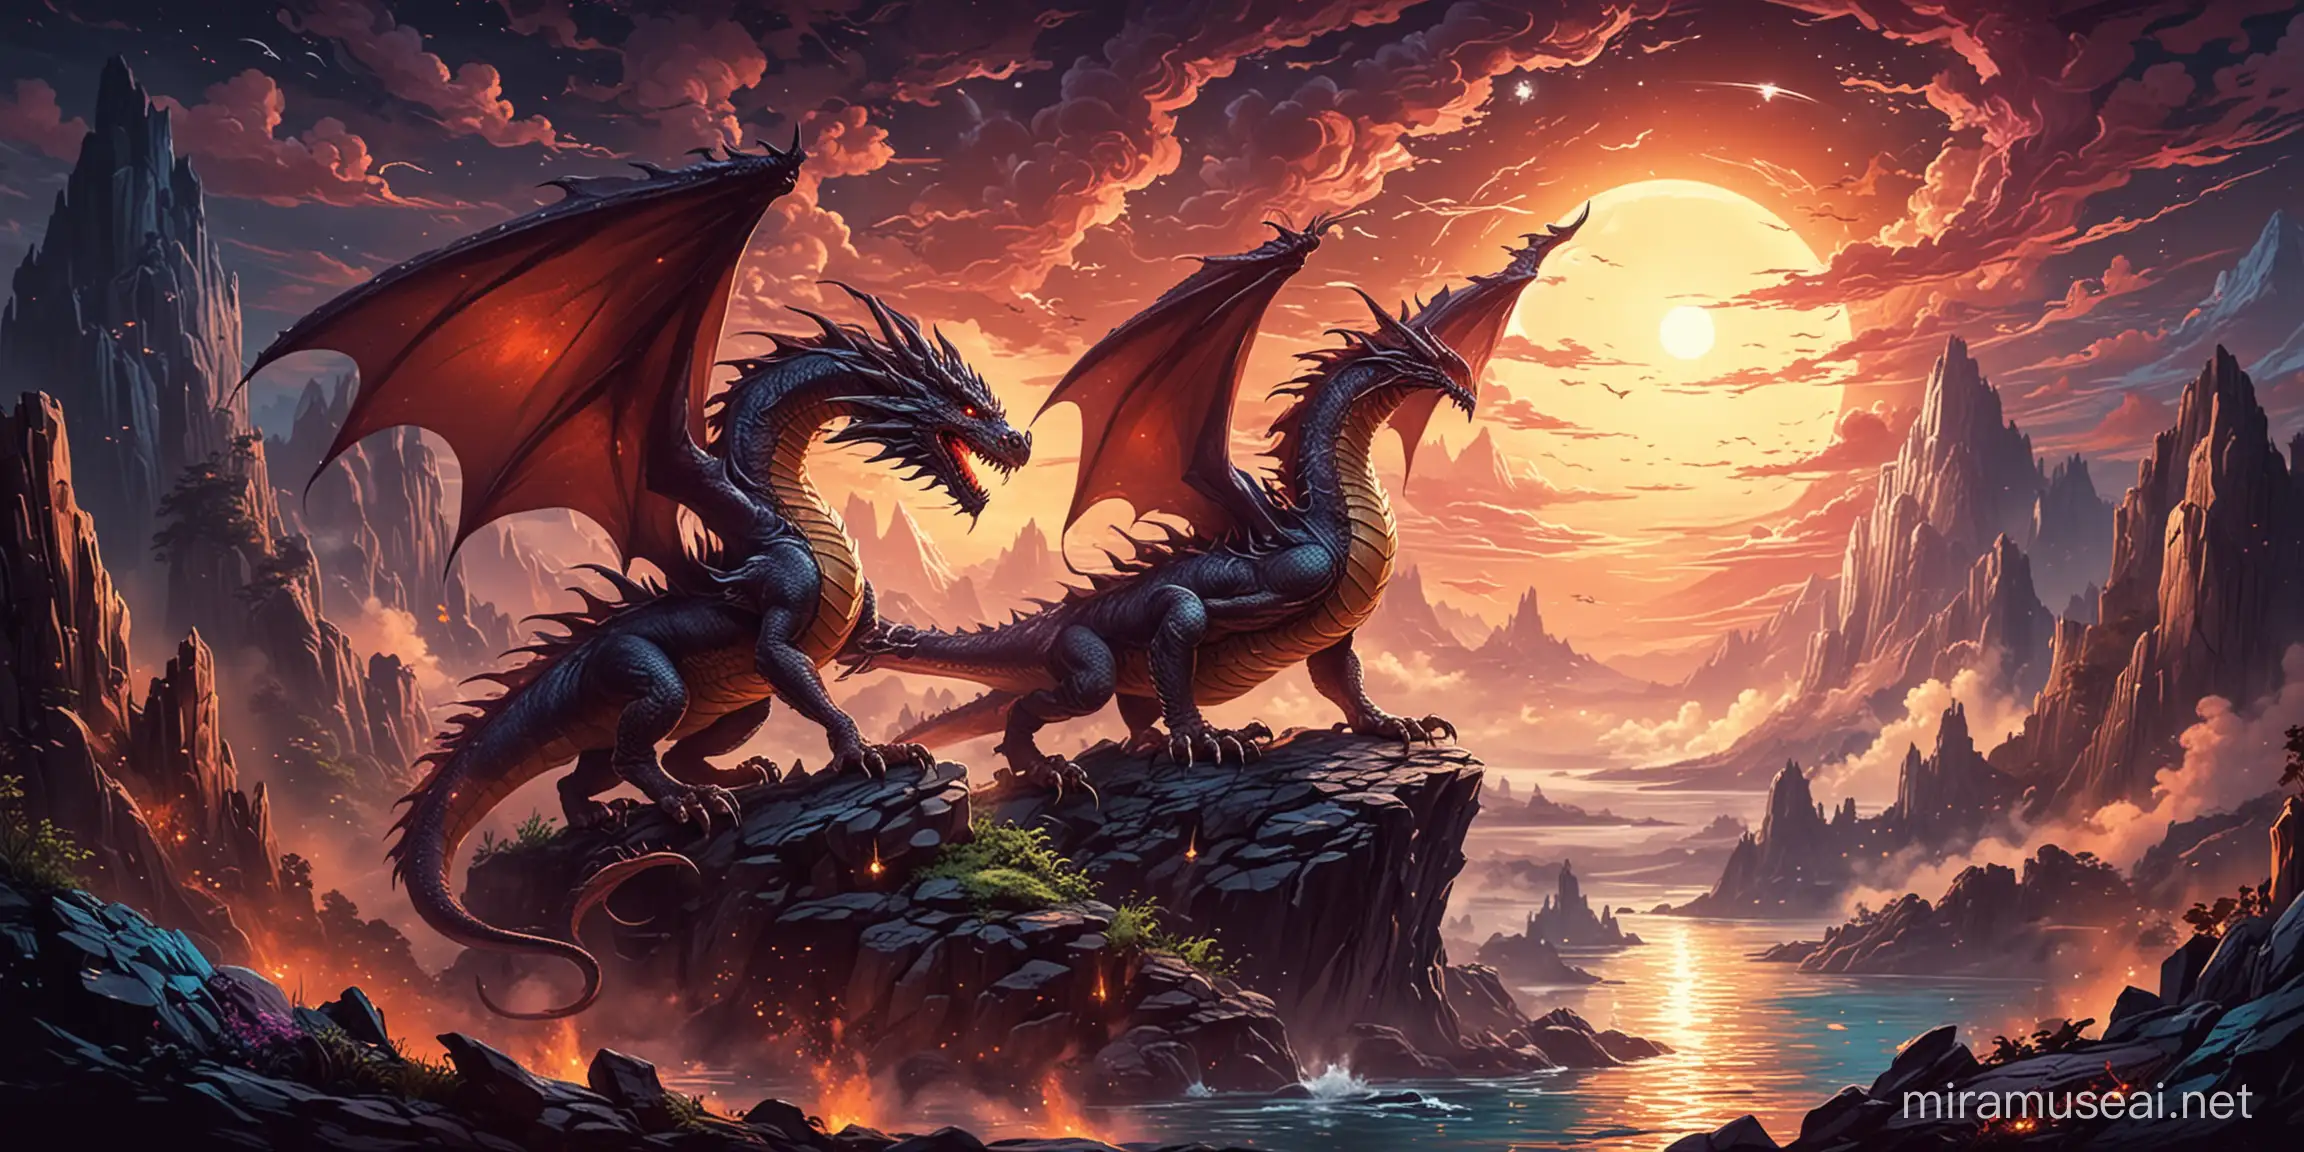 Majestic Dragon in Mystical Fantasy Landscape